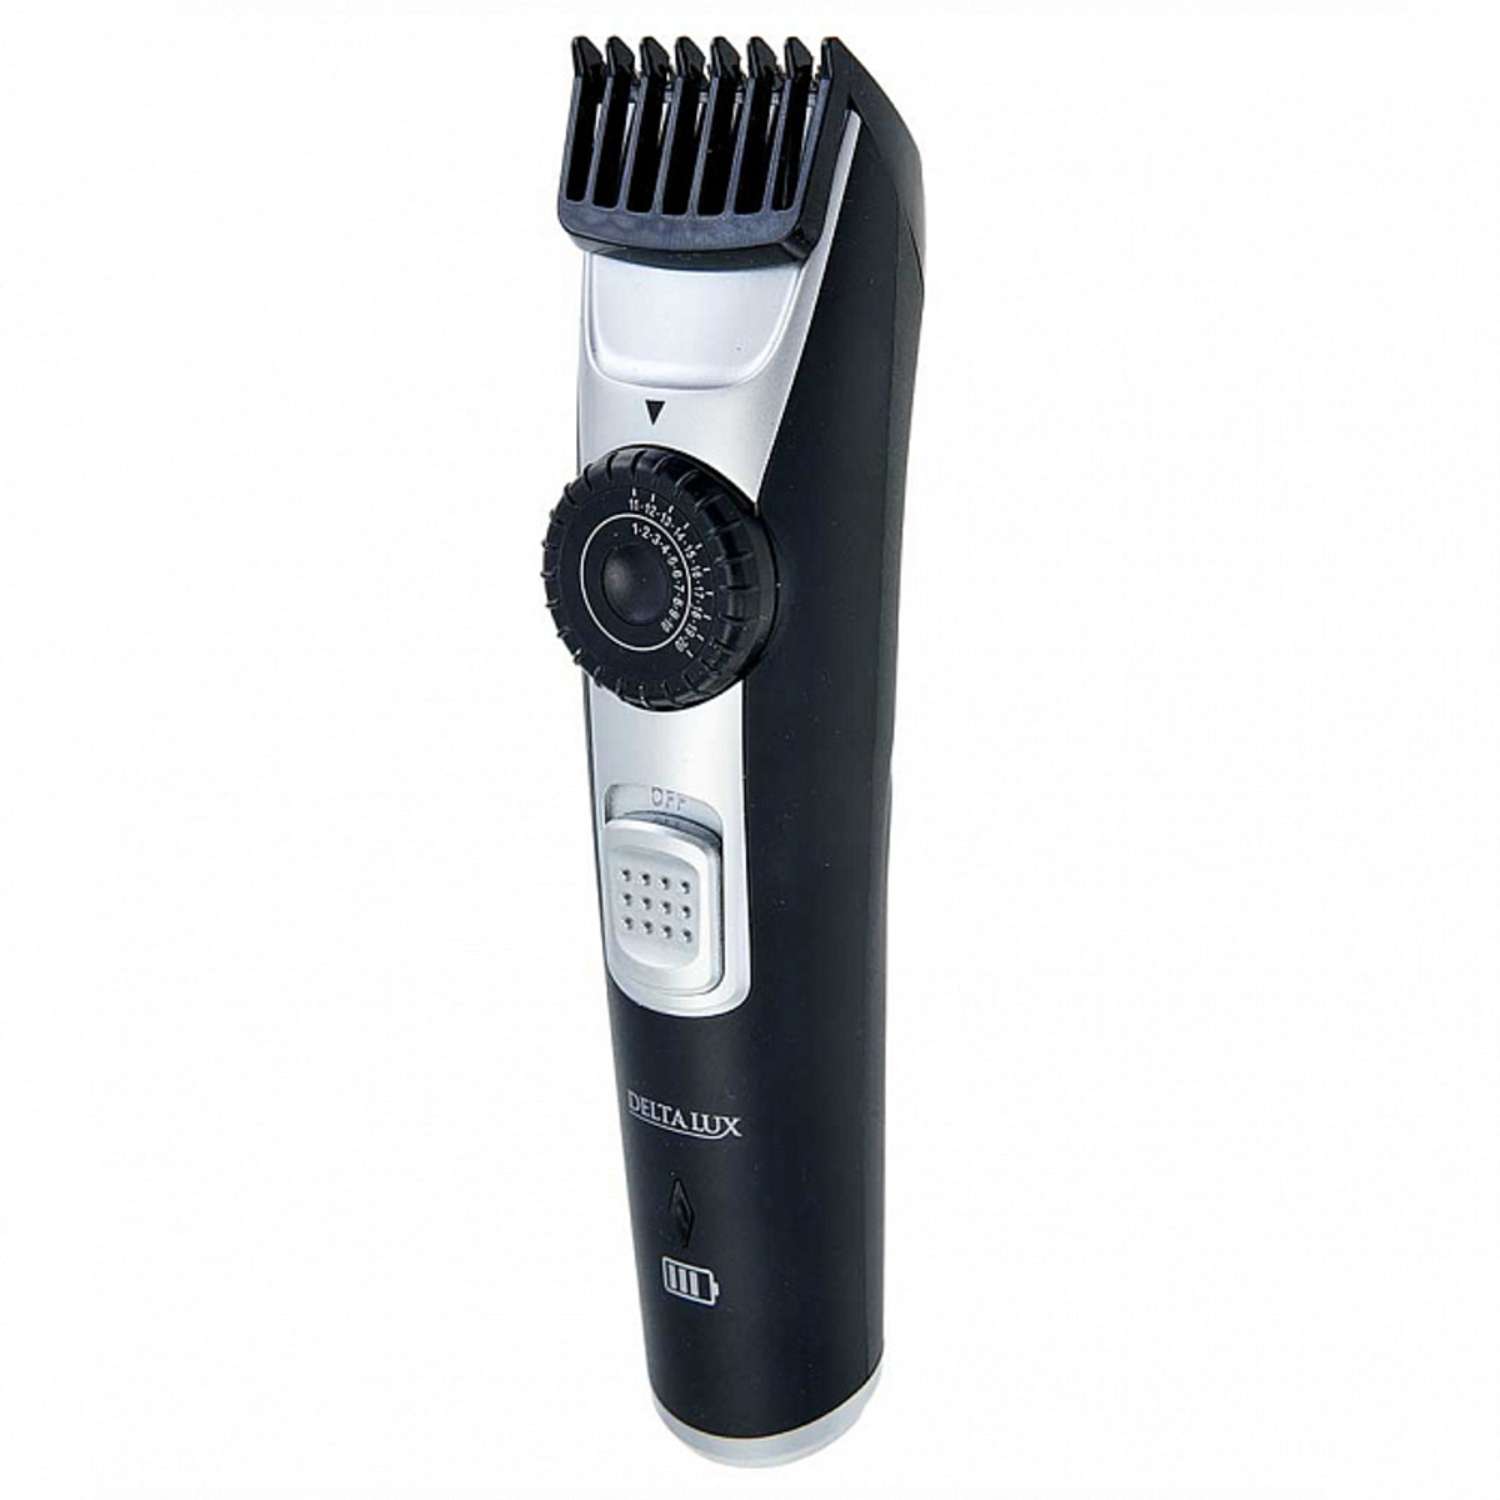 Машинка для стрижки волос Delta Lux DE-4208A для волос и бороды регулировка 2 в 1 черный - фото 1